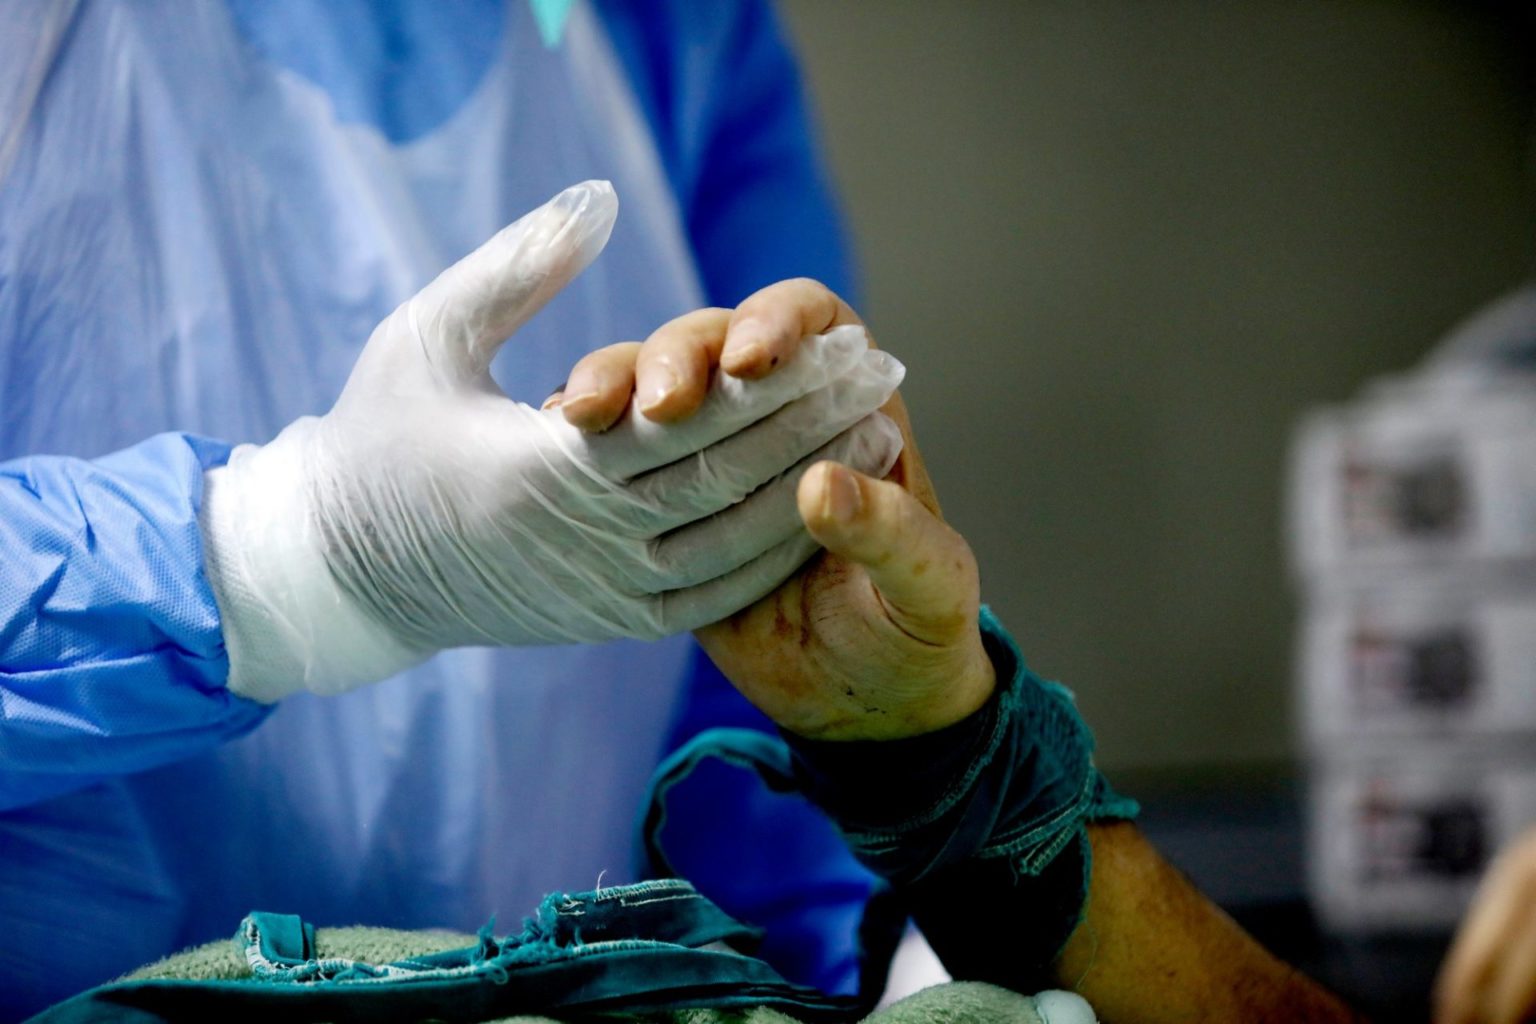 Covid-19 ασθενής αφυπνίζεται από την καταστολή και σφίγγει χέρι του ιατρού εντατικολόγου Κωστή Ποντίκη (Απρίλιος 2020) Φωτογραφία: Γιώργος Μουτάφης | Σχεδιασμός: Ευγένιος Καλοφωλιάς